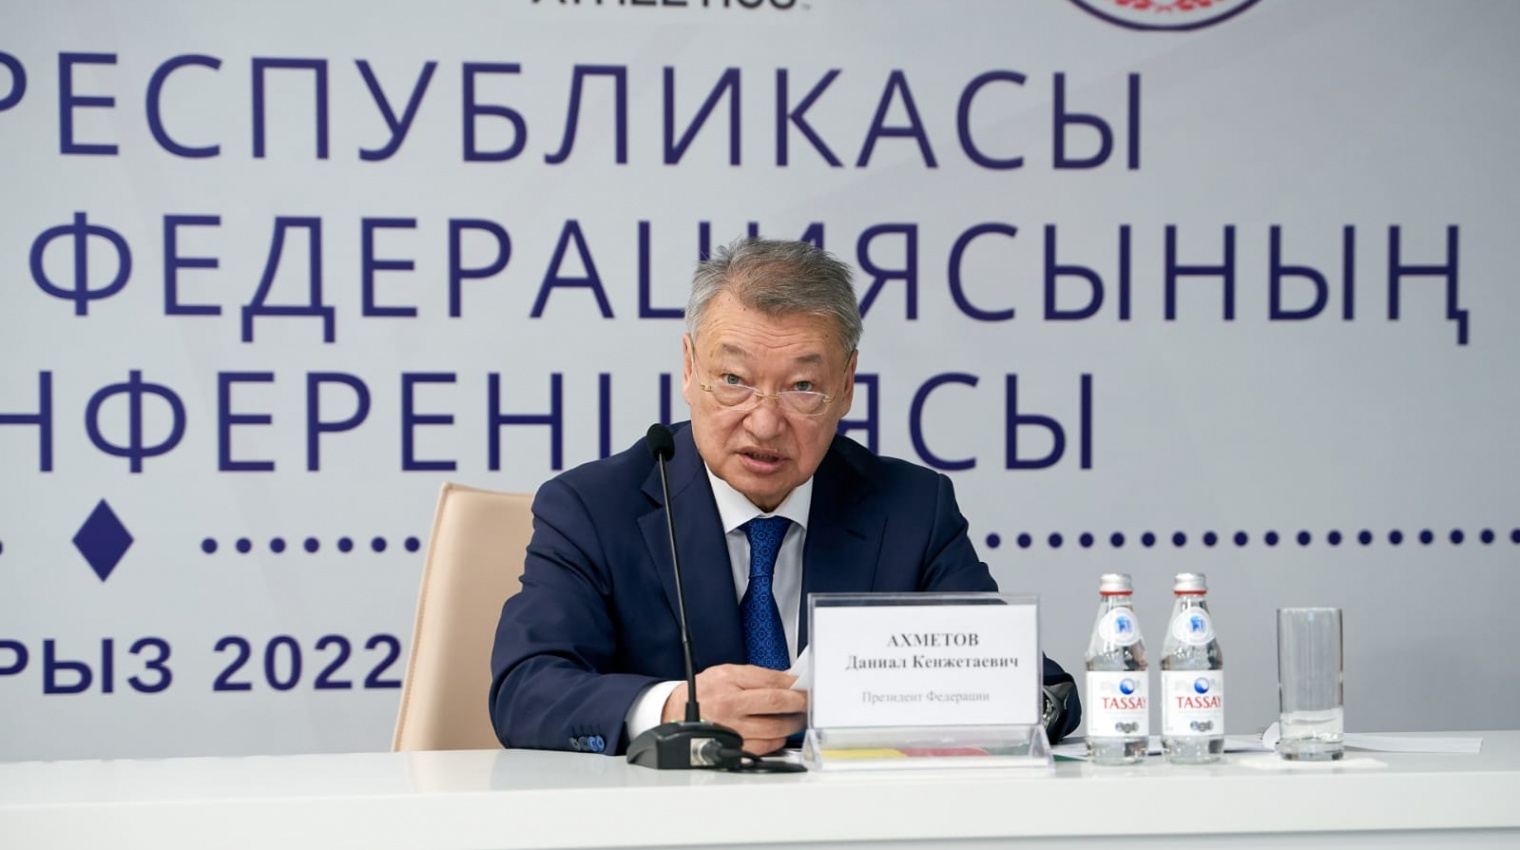 Даниал Ахметов переизбран Президентом Федерации